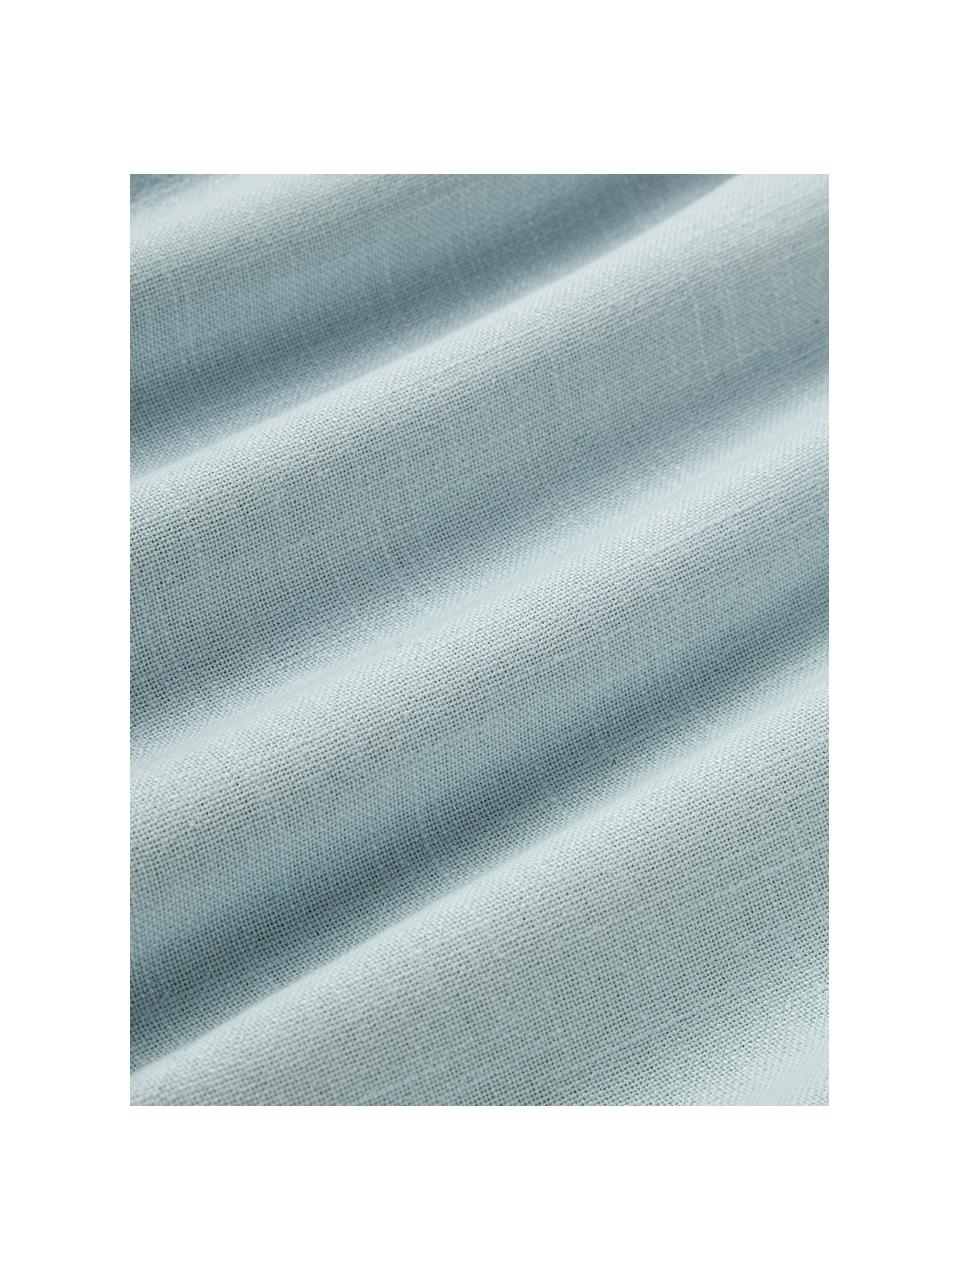 Poszewka na poduszkę z bawełny Vicky, 100% bawełna, Jasny niebieski, S 30 x D 50 cm